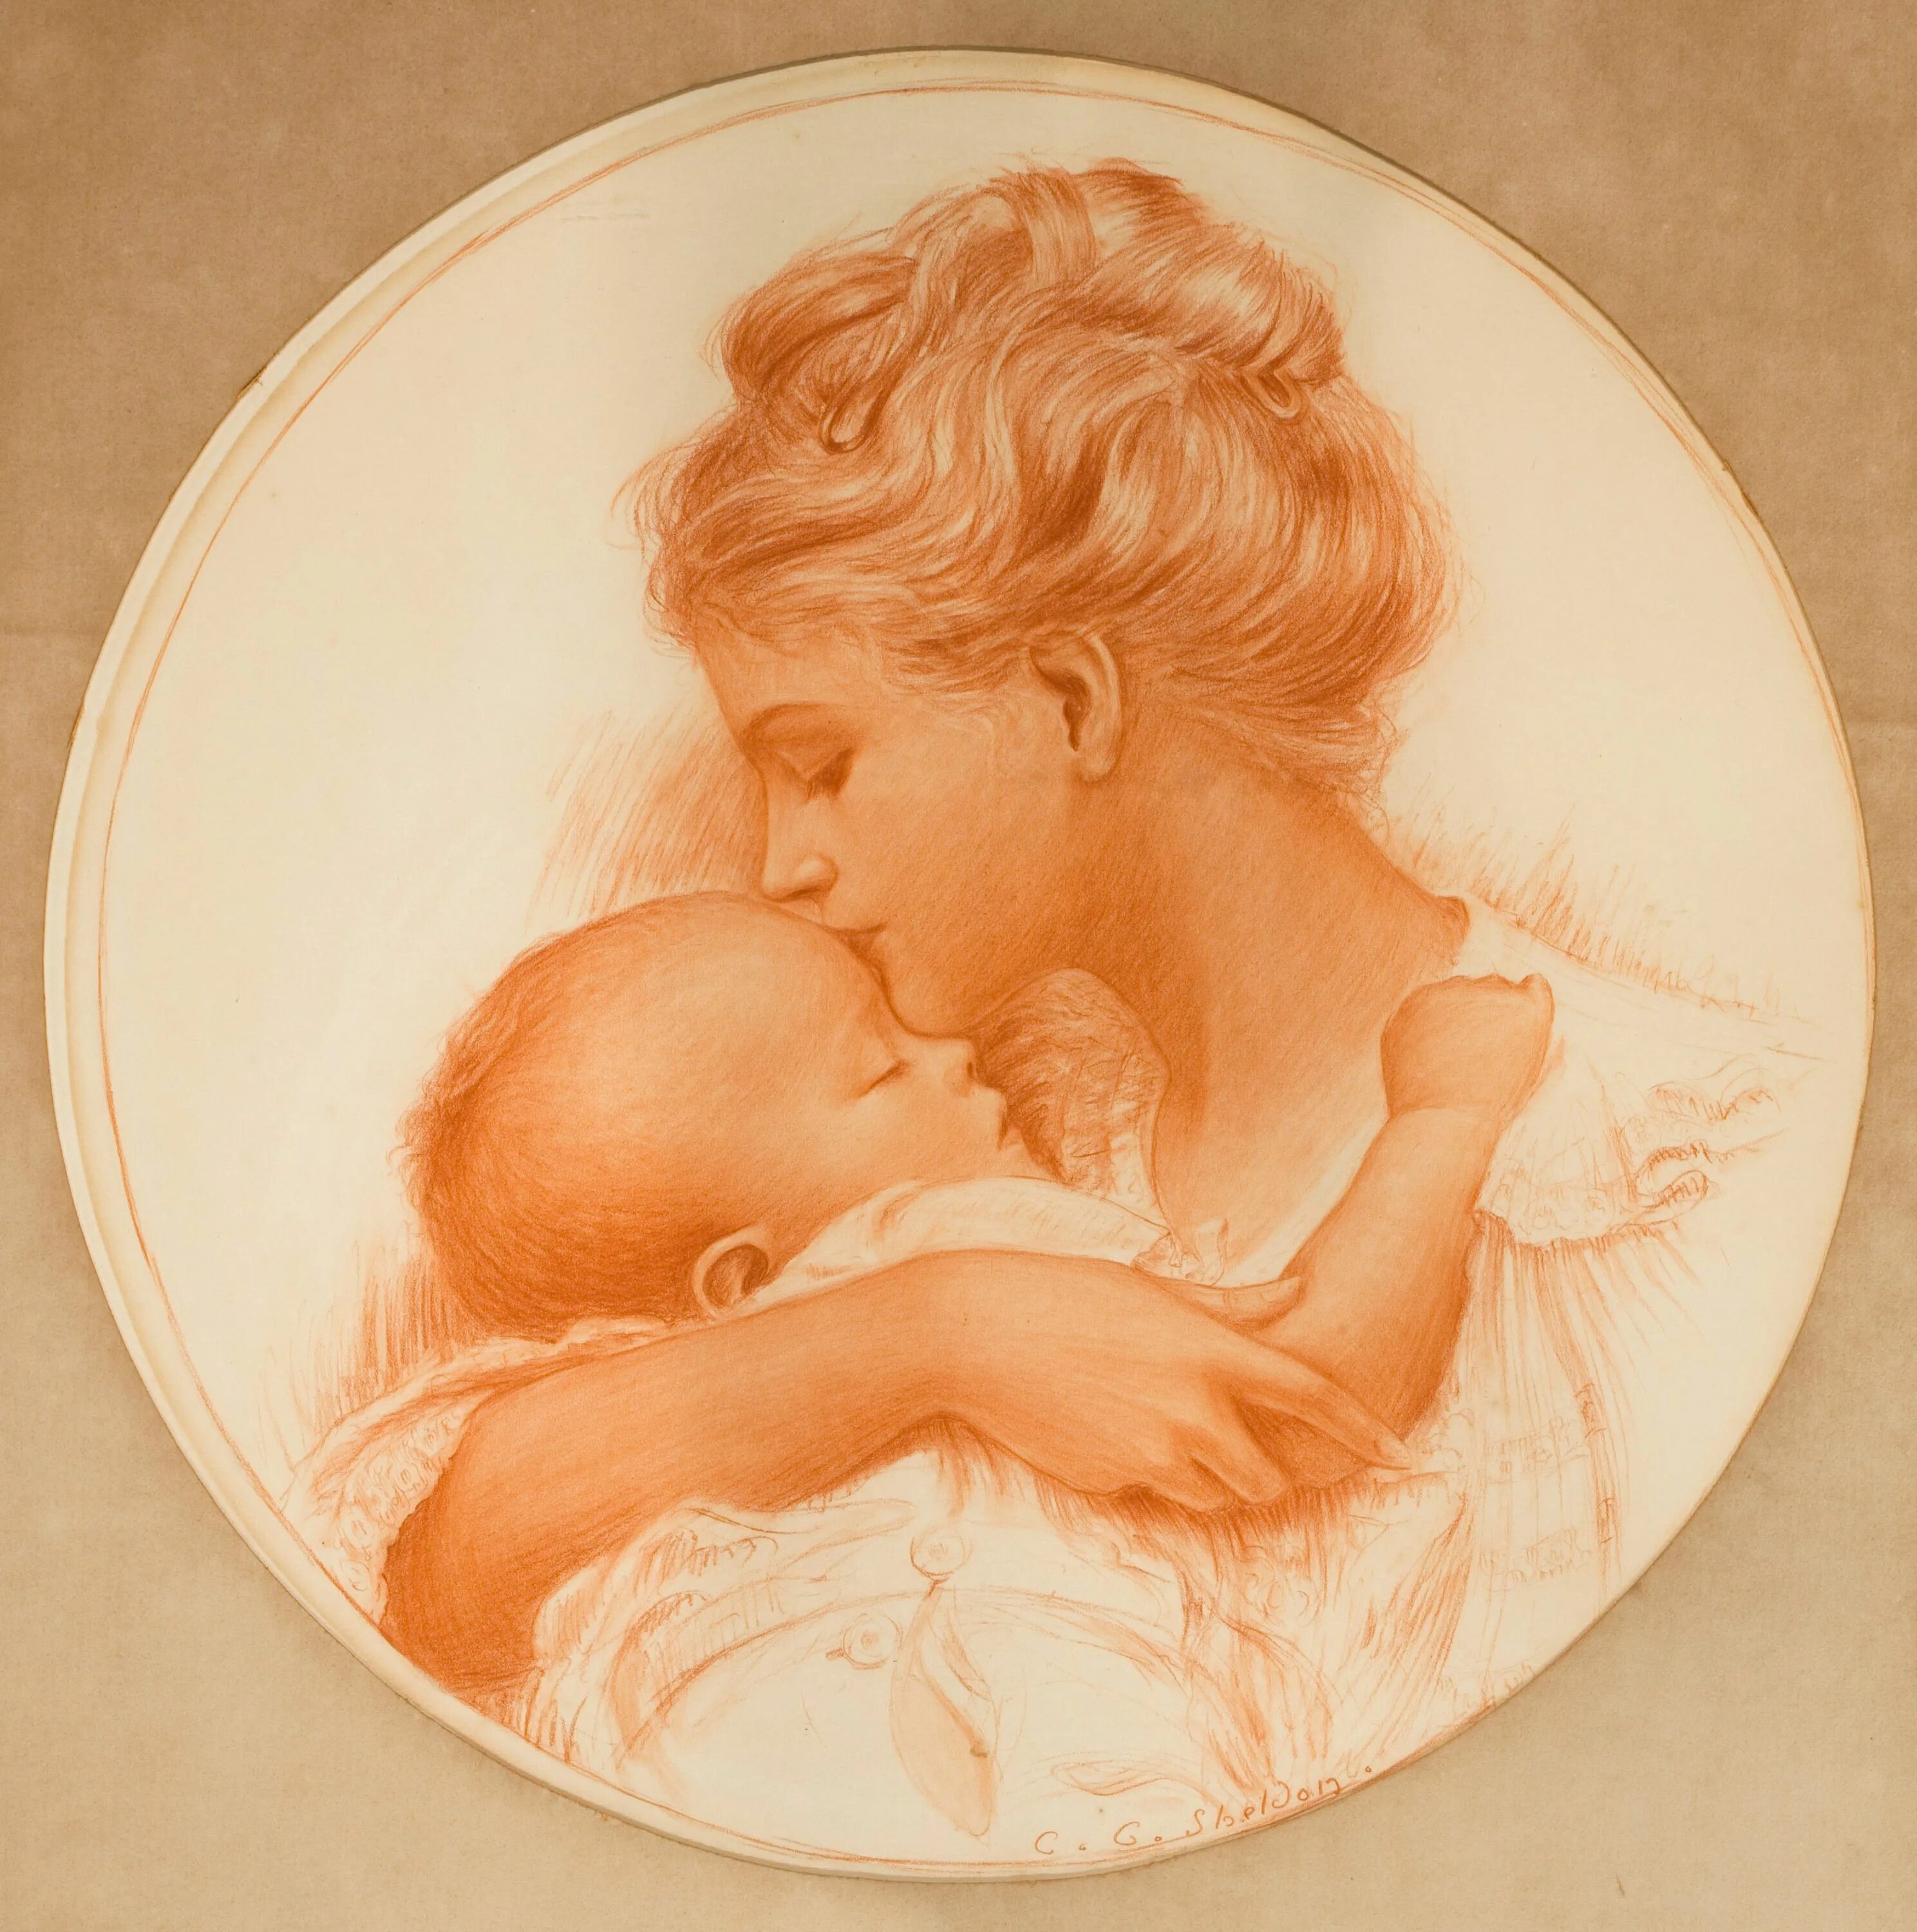 "Мать и дитя", Жук, 1906. Мать и дитя. Образ матери и дитя. Картина женщина с ребенком на руках. Поцелую маму в этот славный день